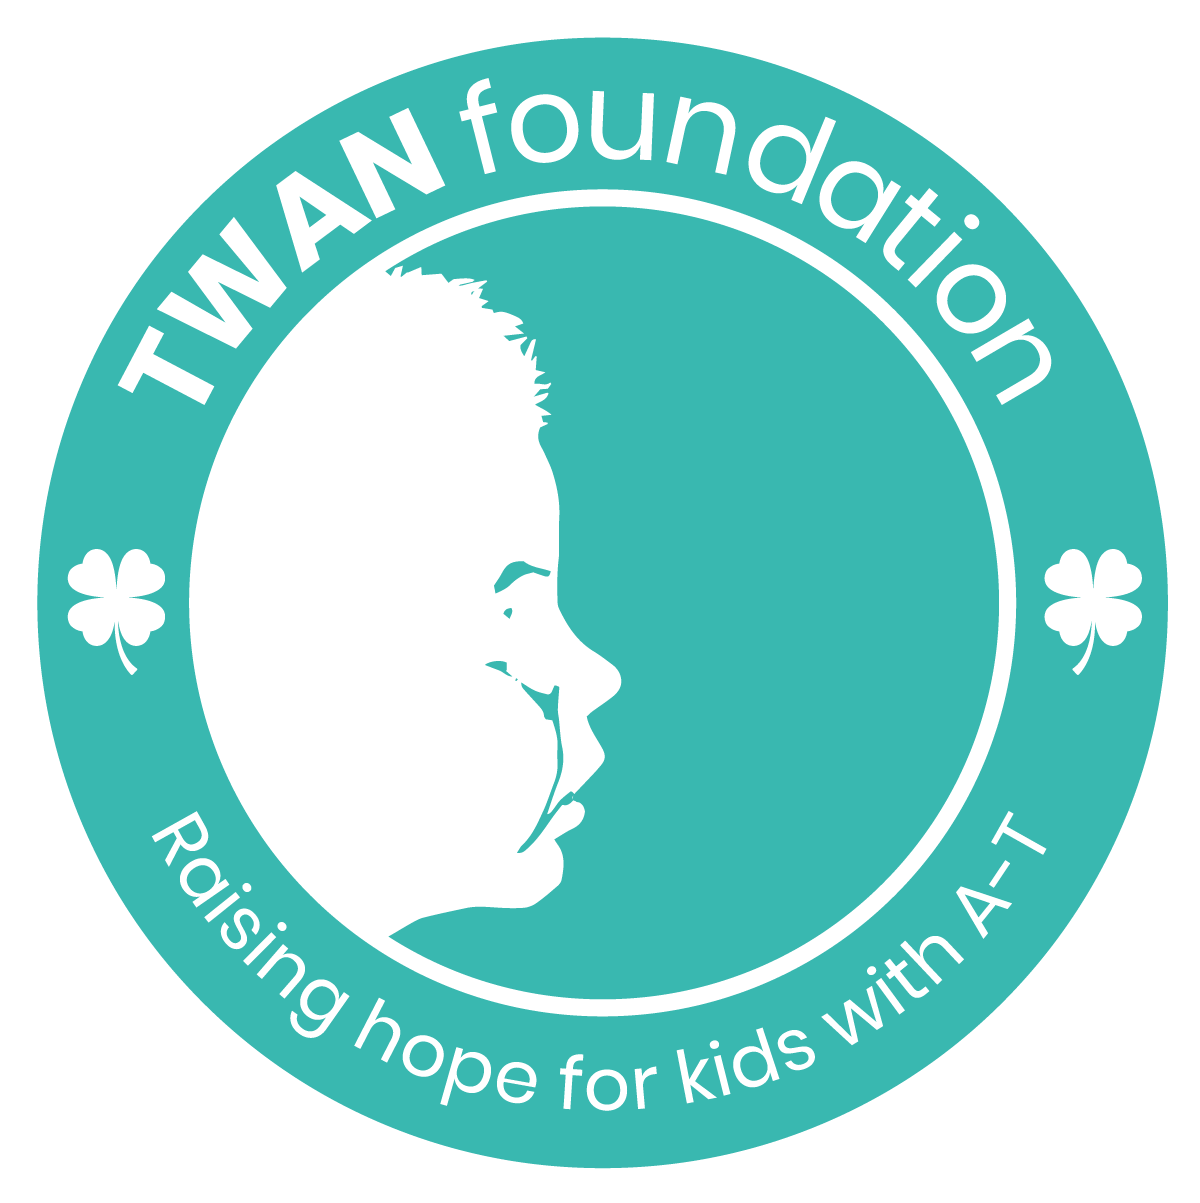 Twan Foundation logo